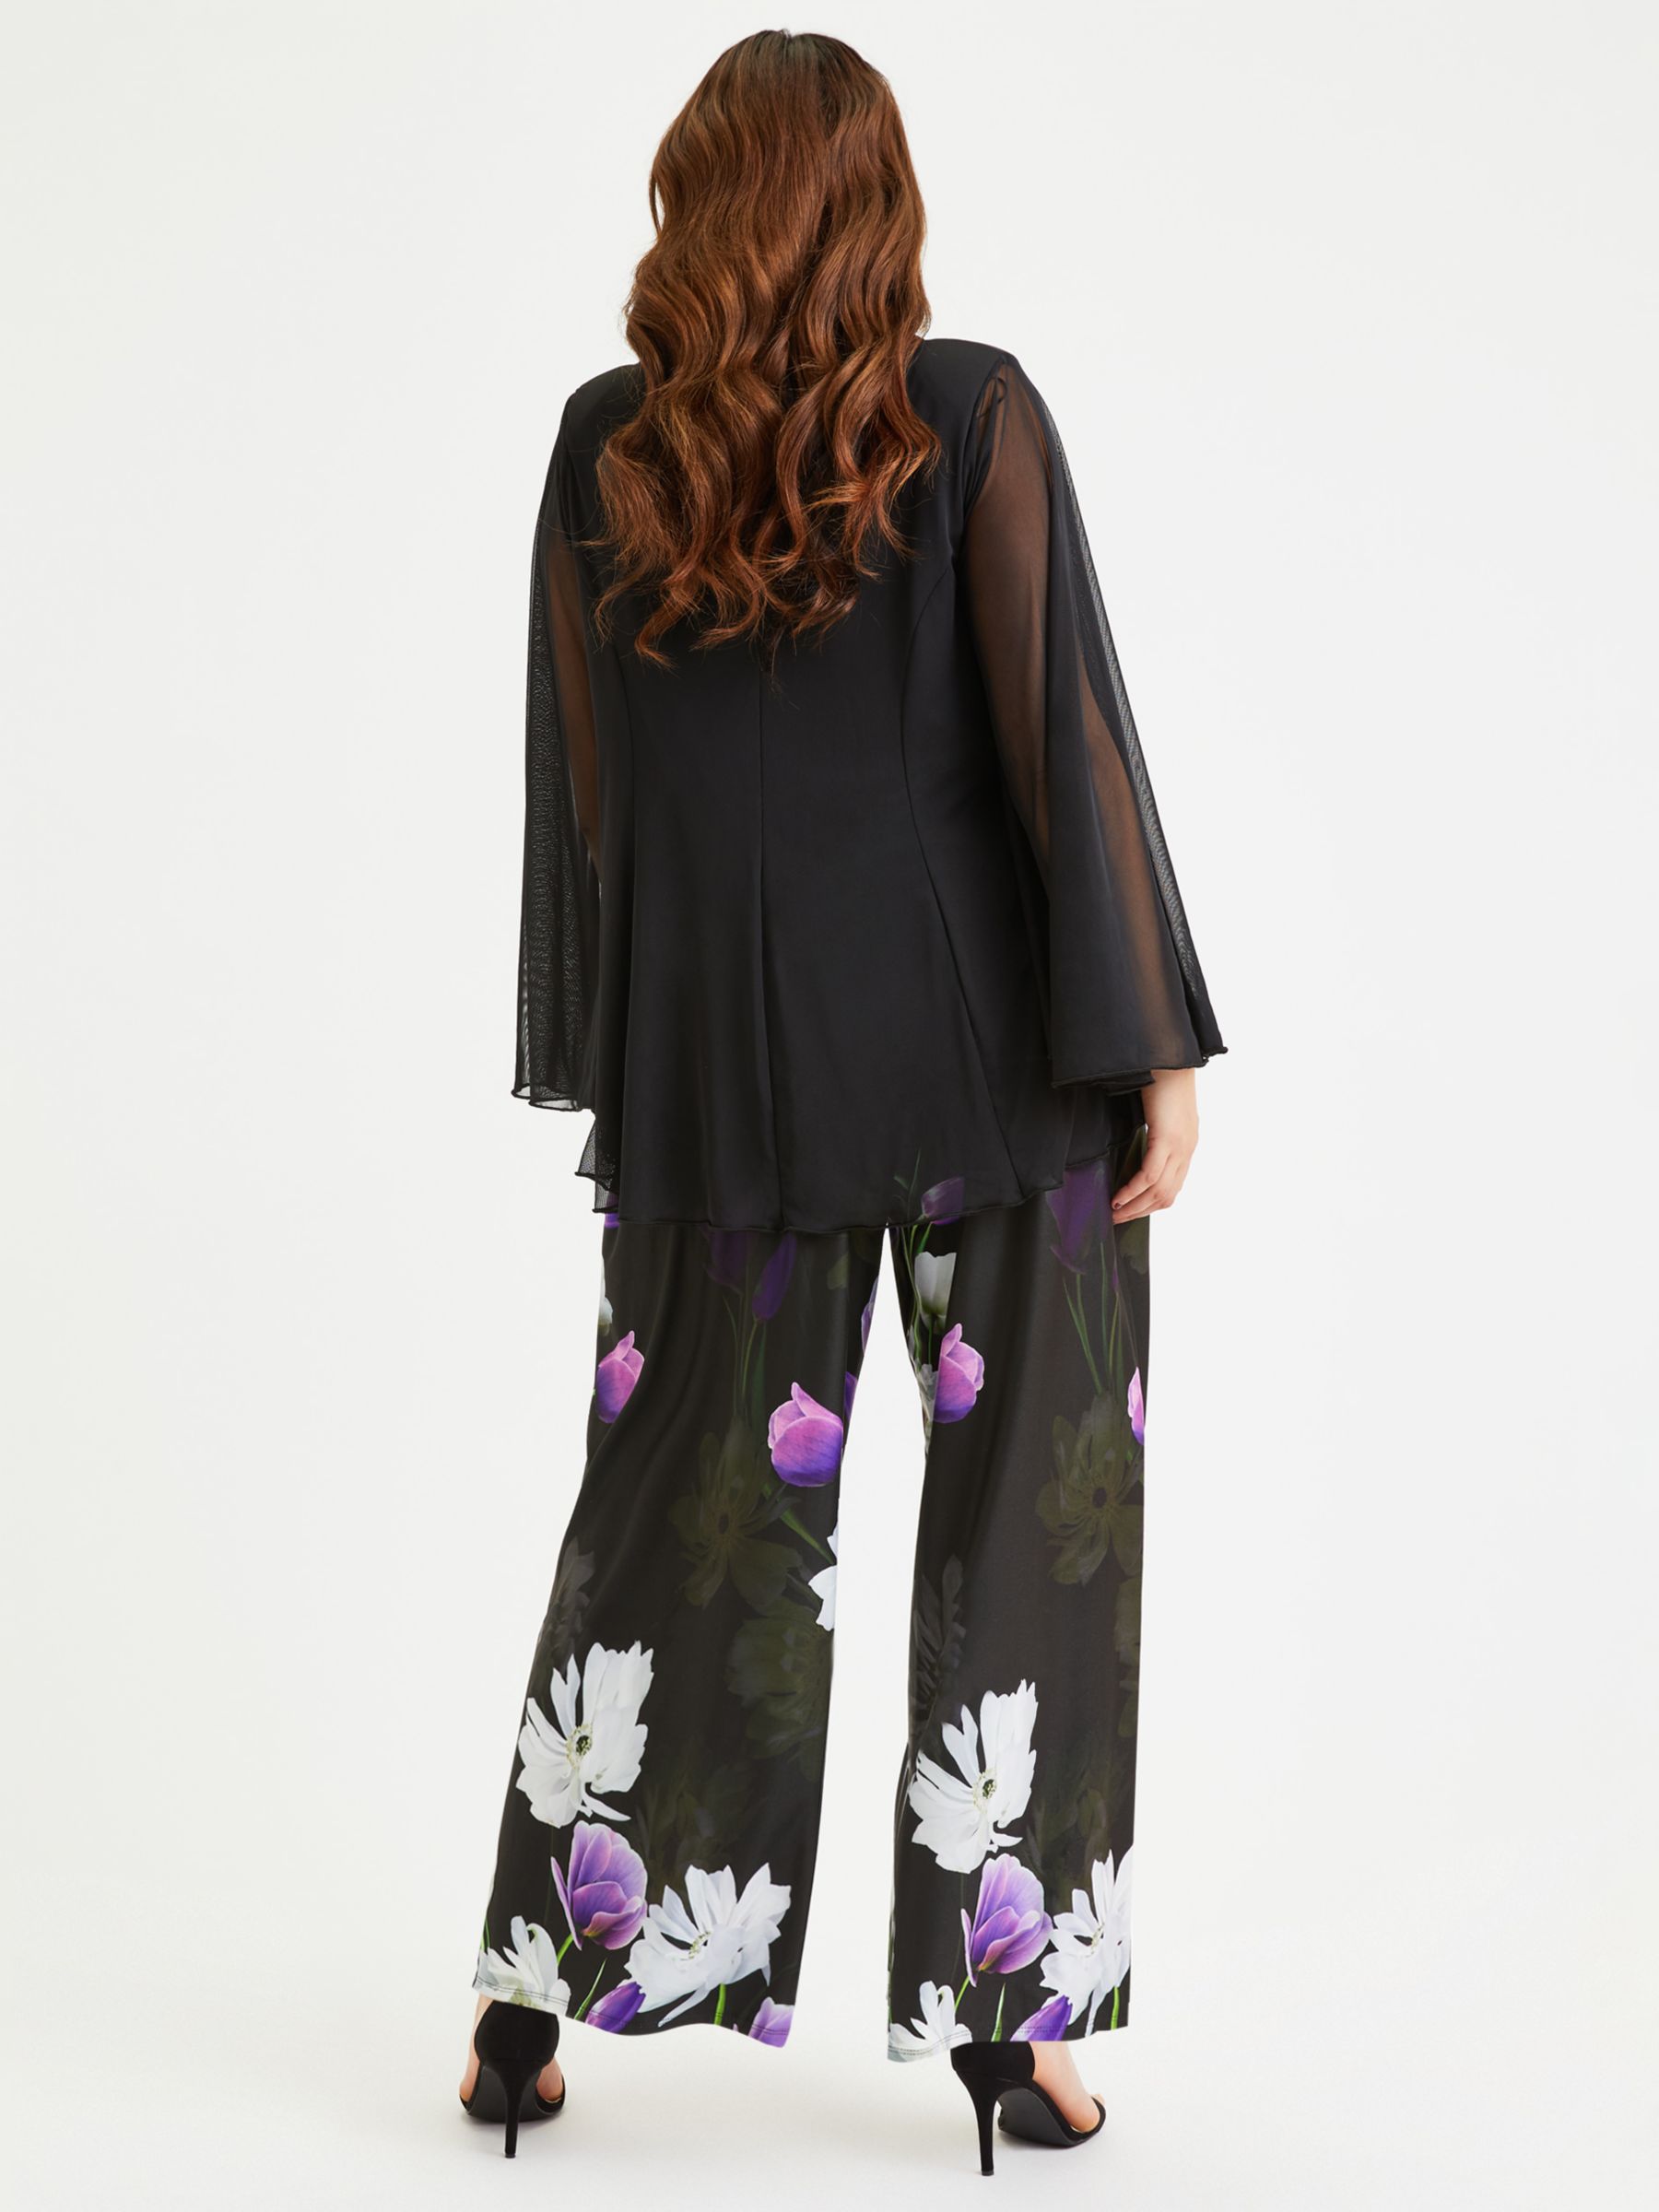 Scarlett & Jo Floral Print Wide Leg Lounge Trousers, Black/Purple, 12